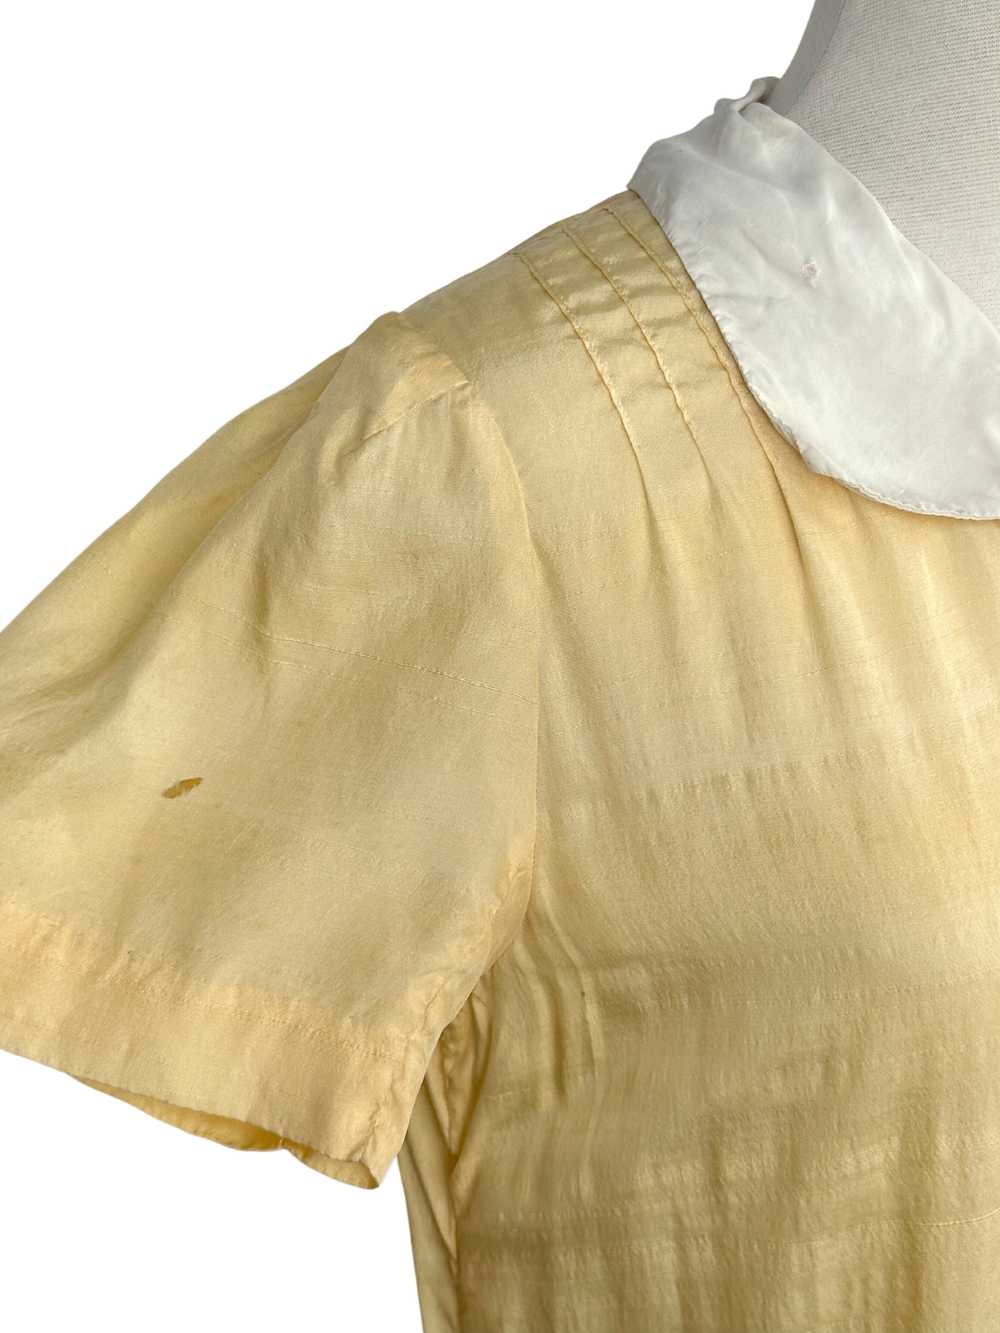 Vintage 1920s Yellow Cotton Flapper Dress - M - image 6